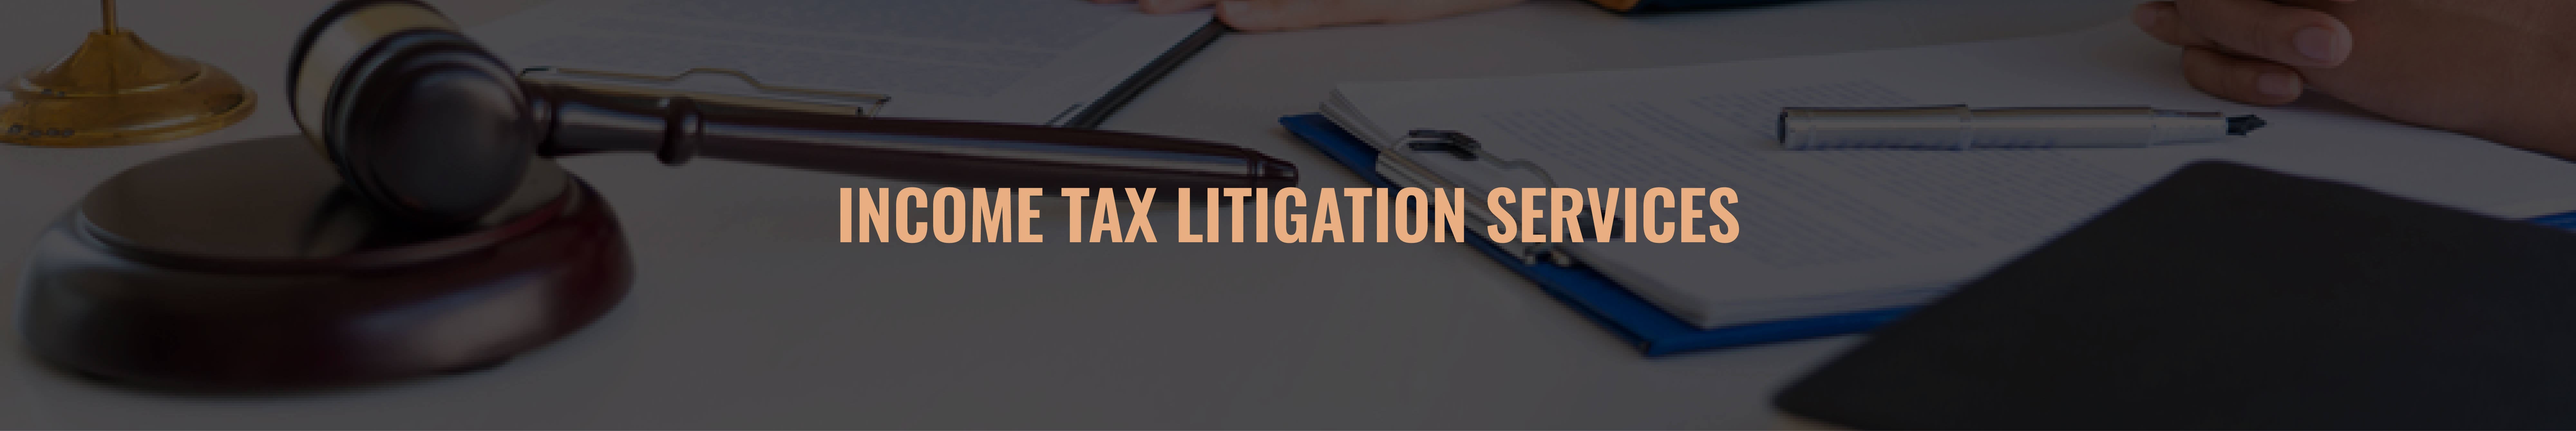 Income Tax Litigation Services